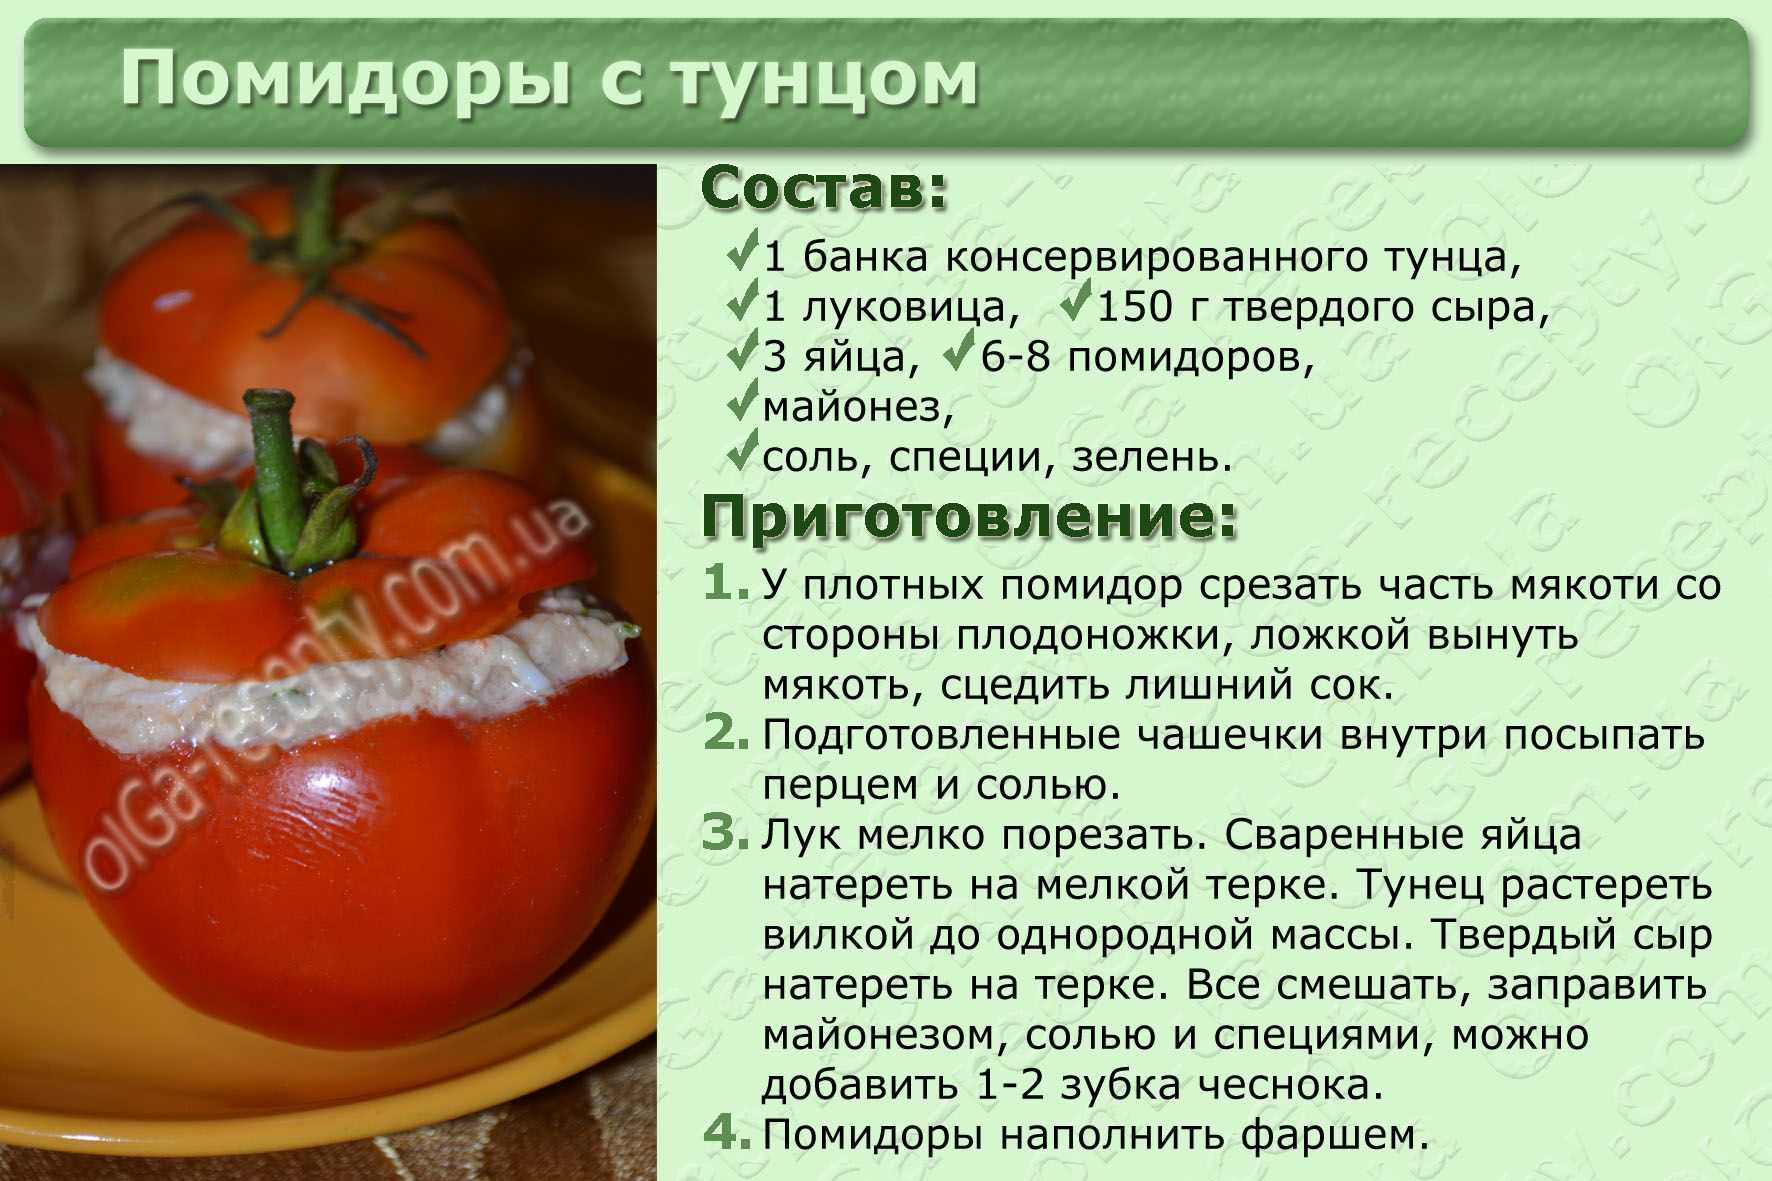 При печени можно помидор. Рецепты в картинках с описанием. Рецепты блюд в картинках с описанием. Рецепт здорового блюда. Блюда из овощей с описанием.